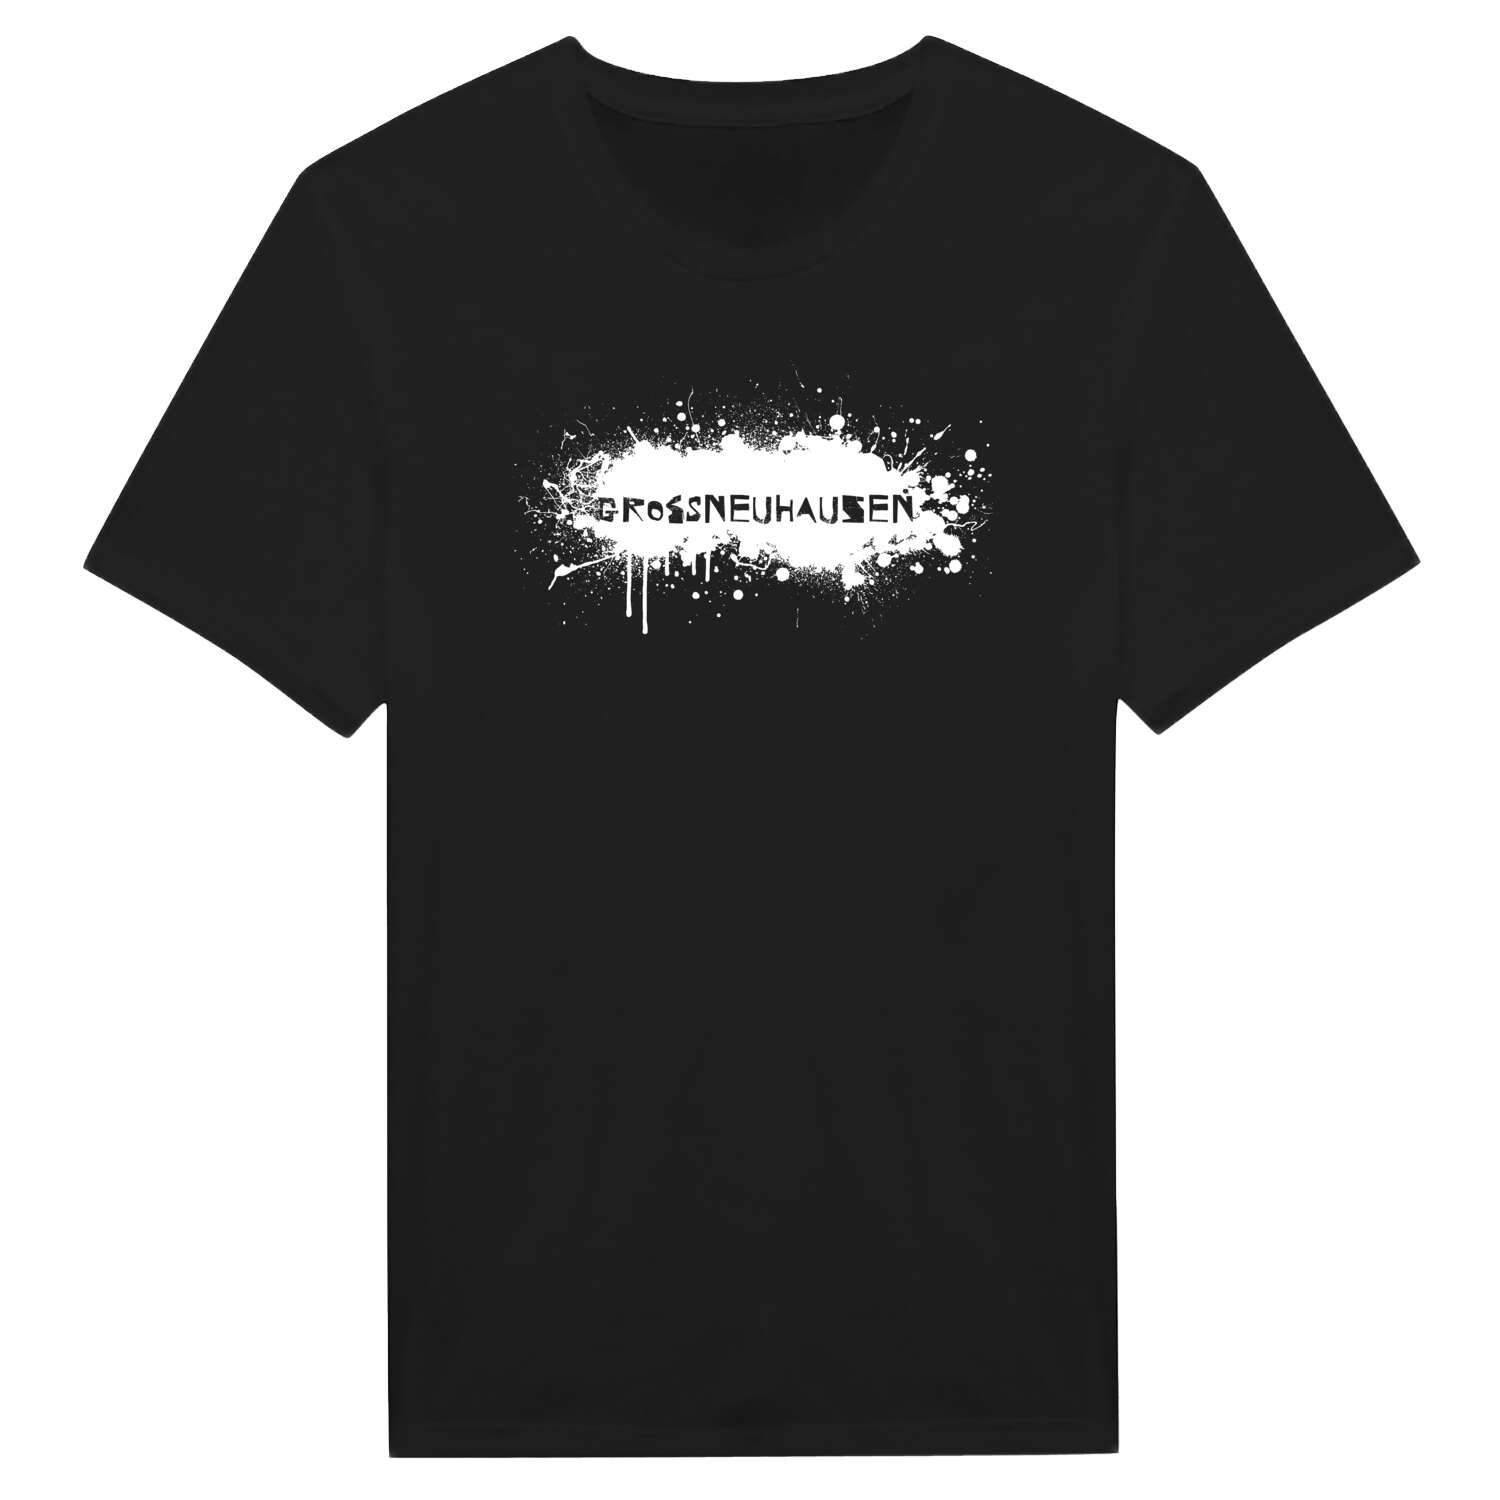 Großneuhausen T-Shirt »Paint Splash Punk«